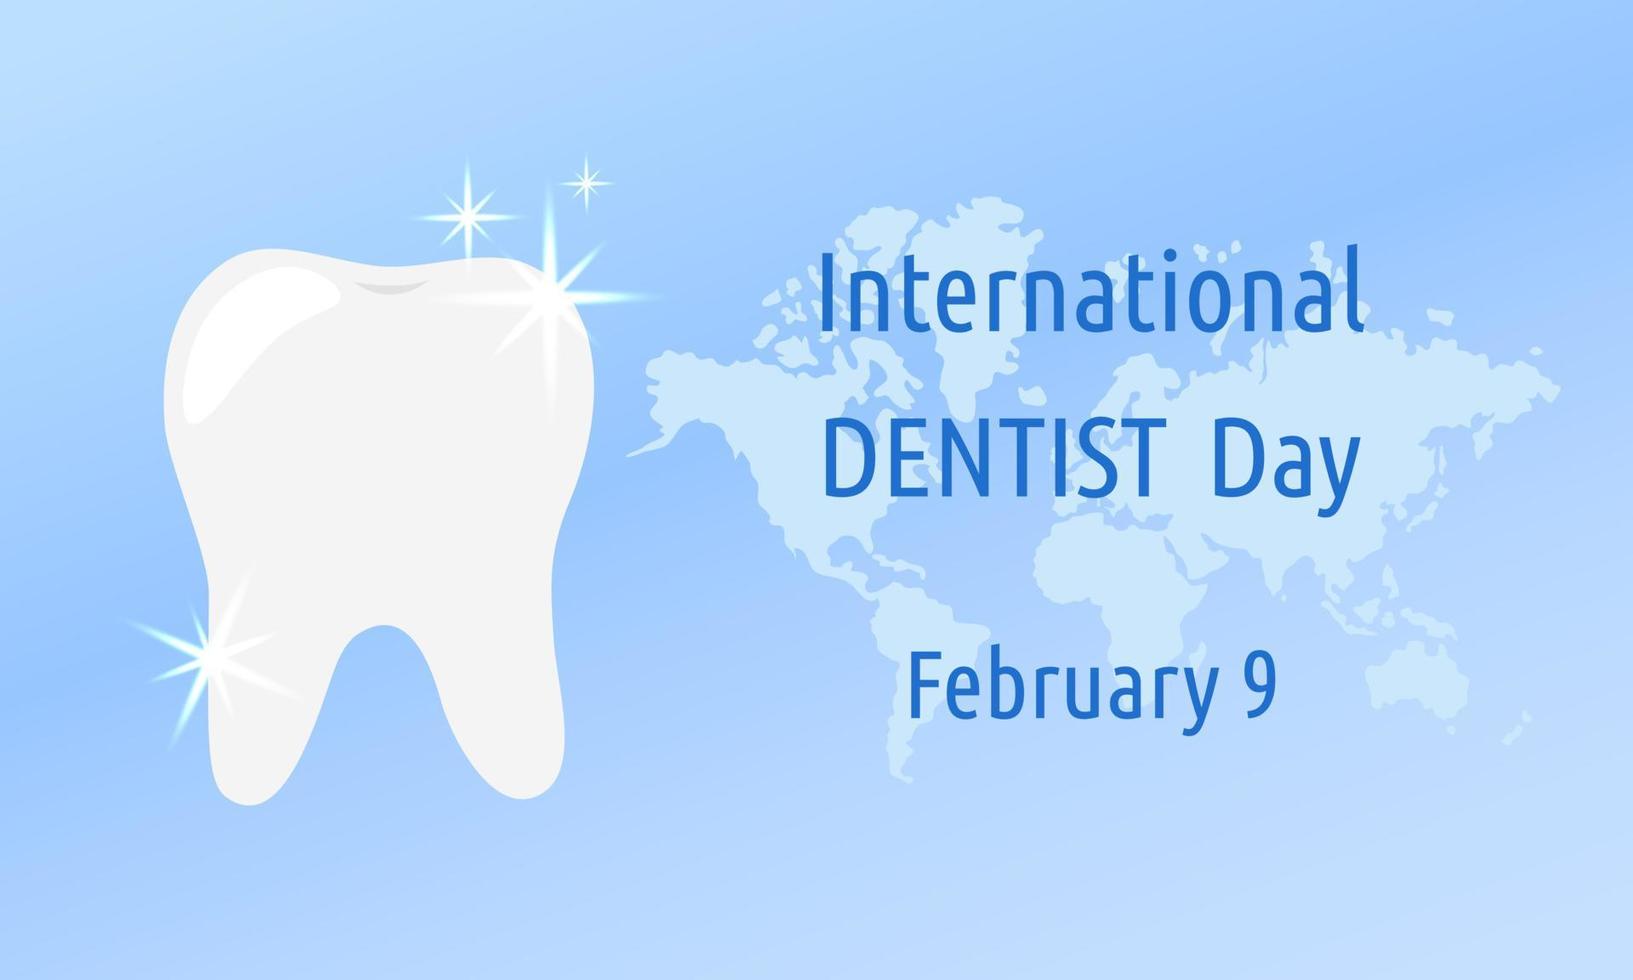 internationella tandläkardagen 9 februari. yrkeshelgdag för stomatolog. glänsande vit tand på blå abstrakt bakgrund. vektor affisch illustration med text